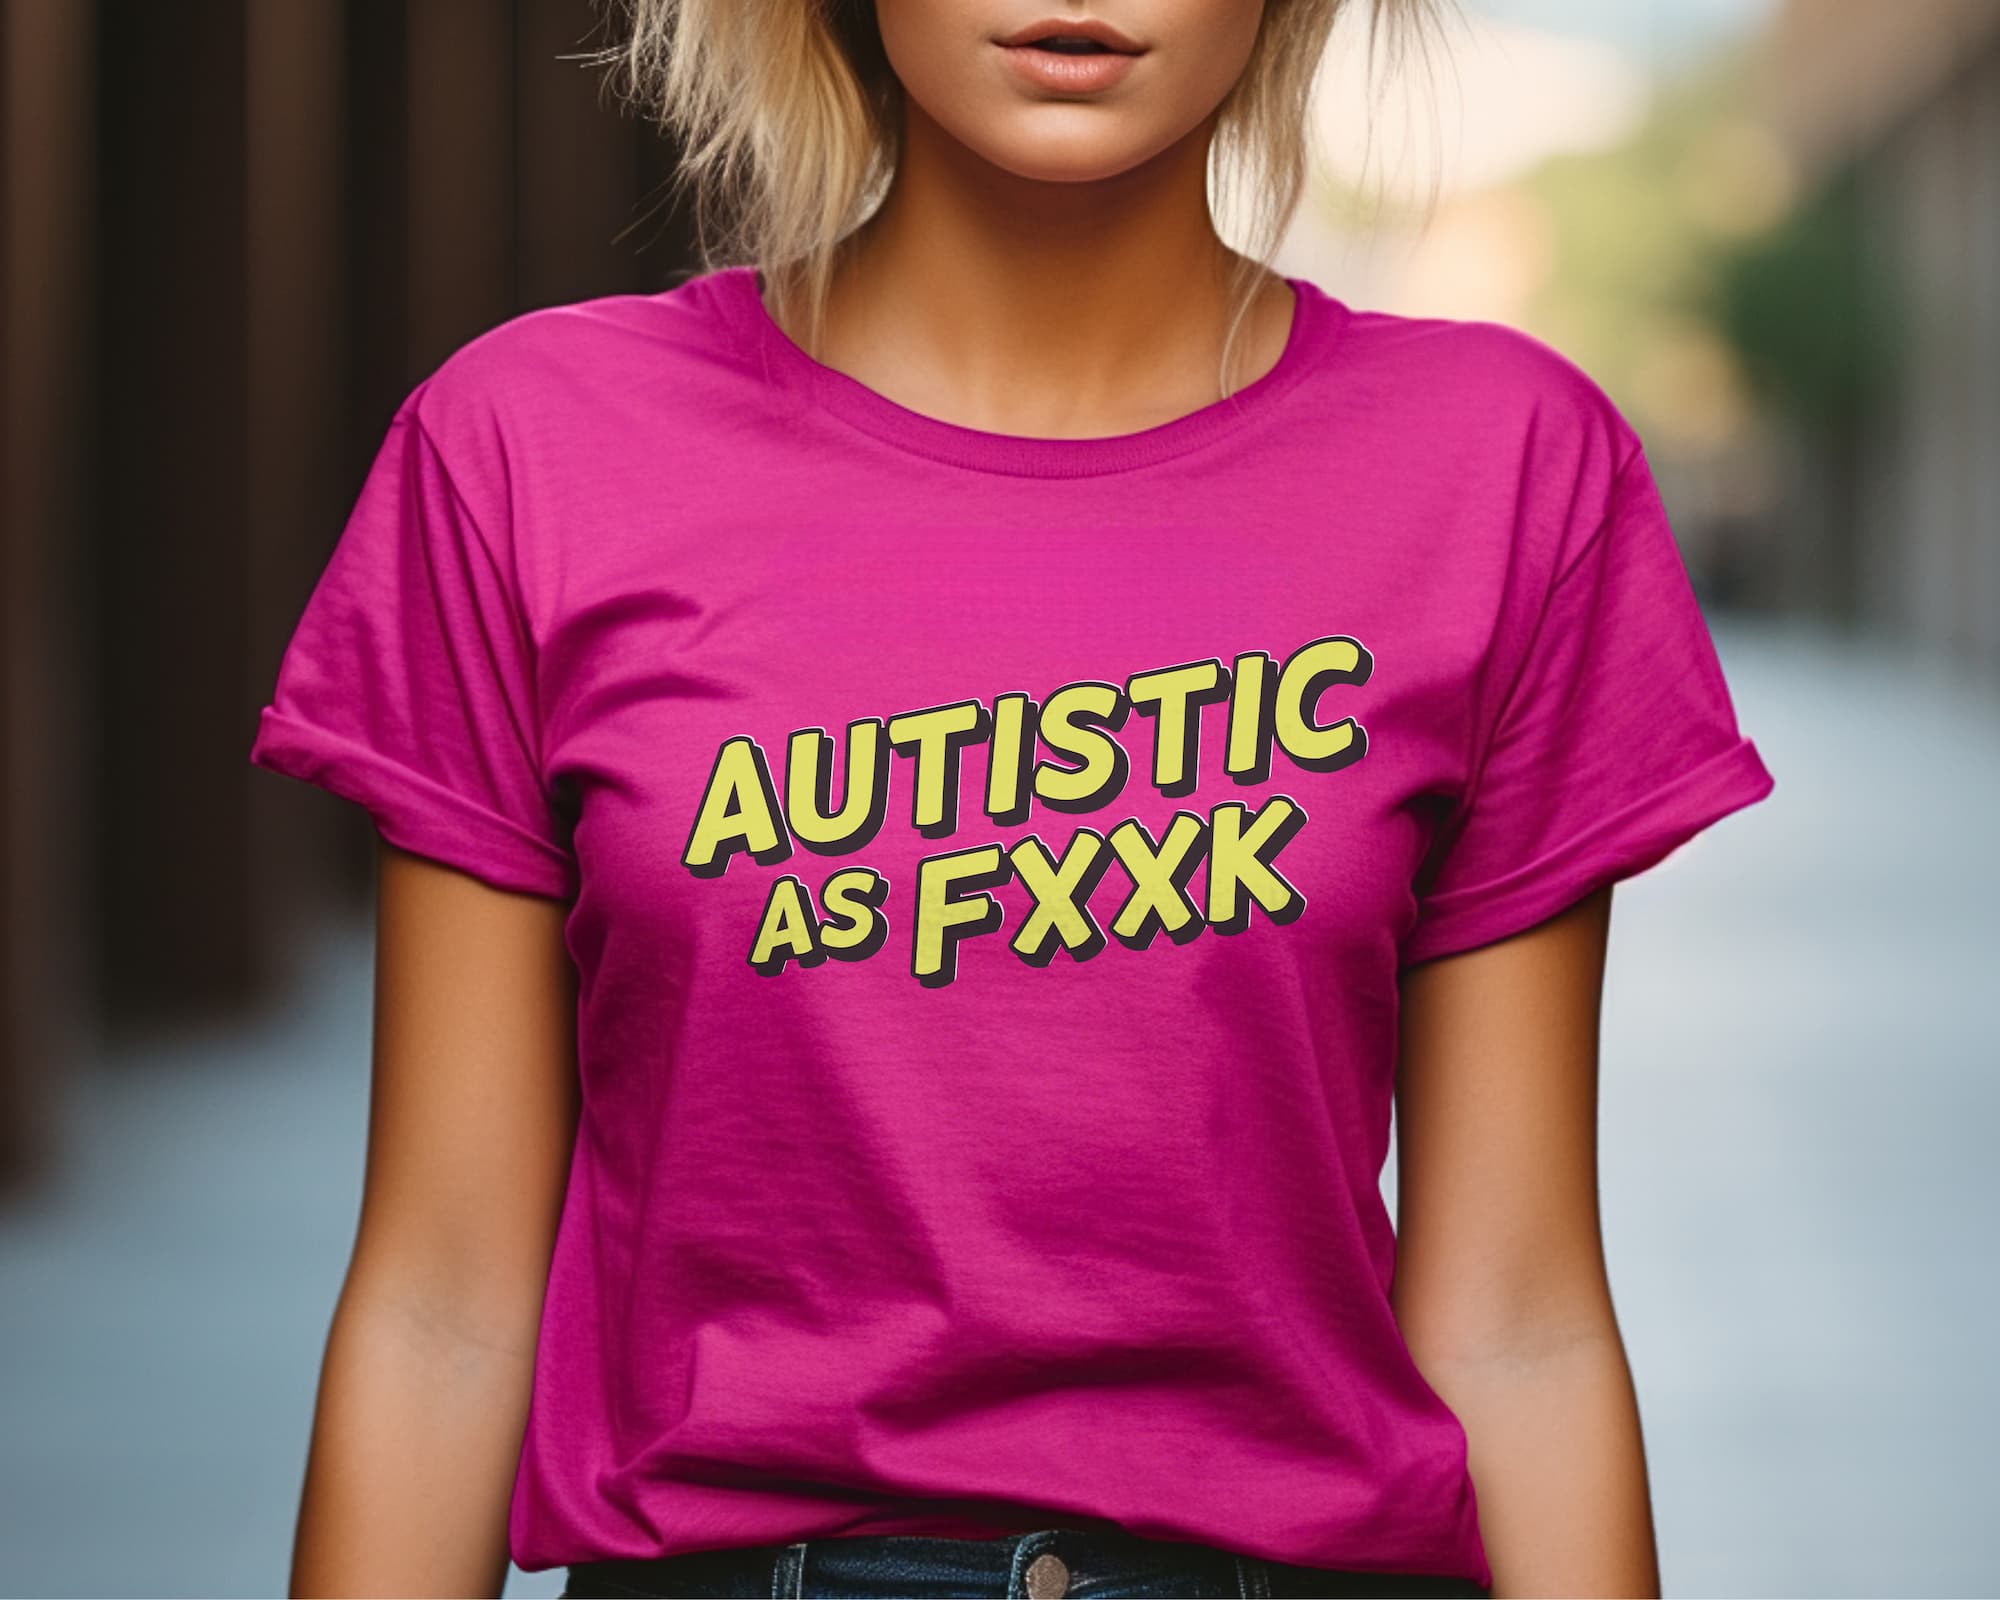 Autistic As Fxxk t-shirt